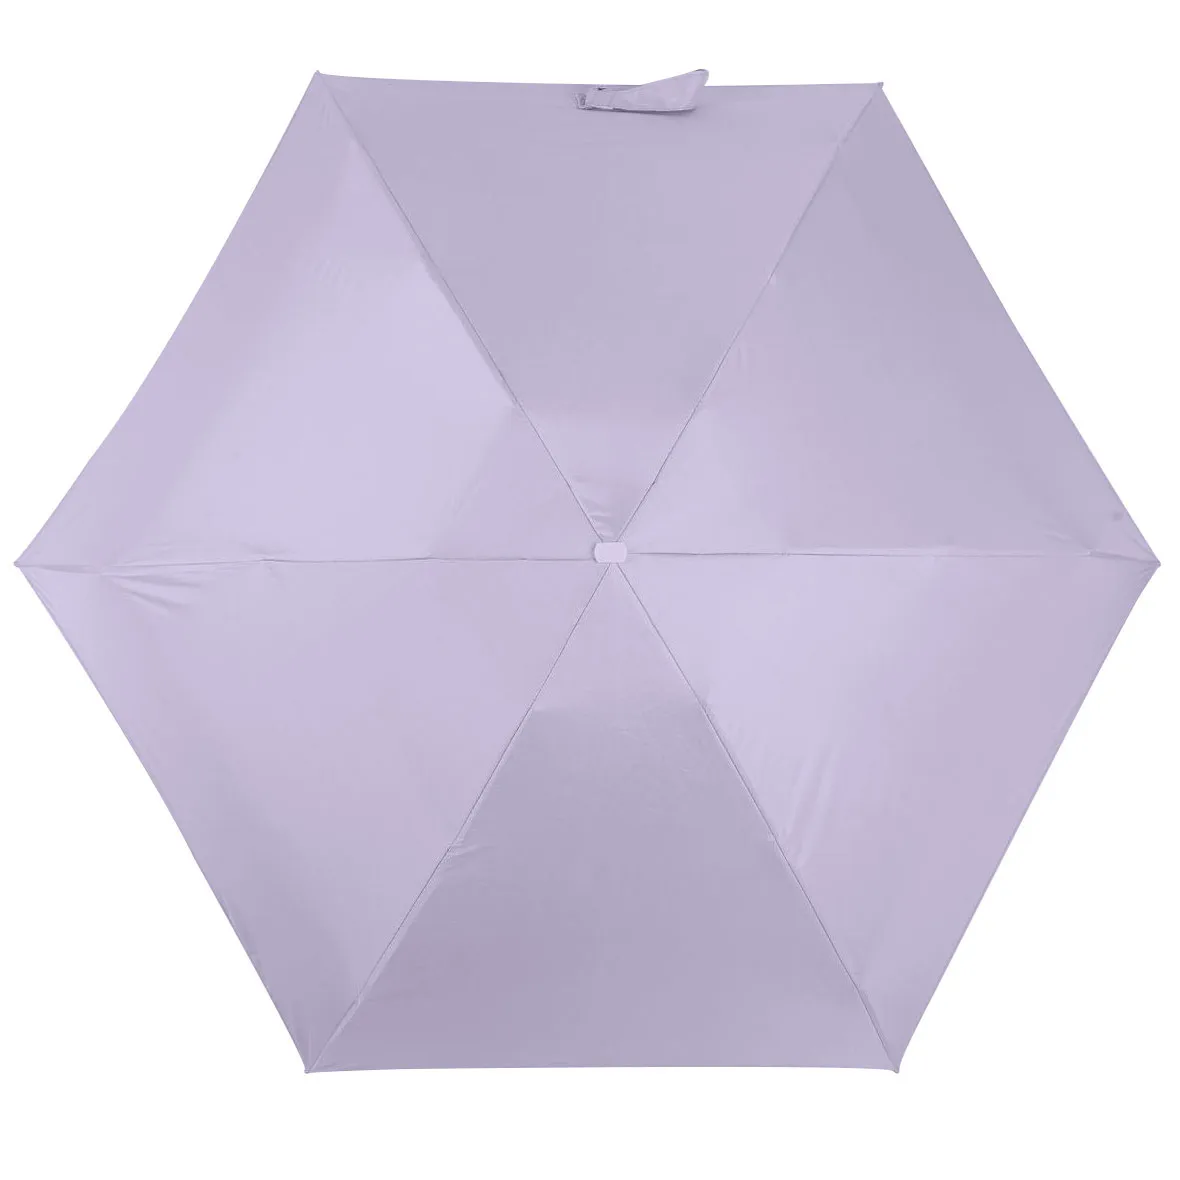 Мини карманный зонтик для женщин УФ маленькие Зонты Дождь для женщин водонепроницаемый для мужчин Защита от солнца удобный для девочек путешествия Parapluie# T2